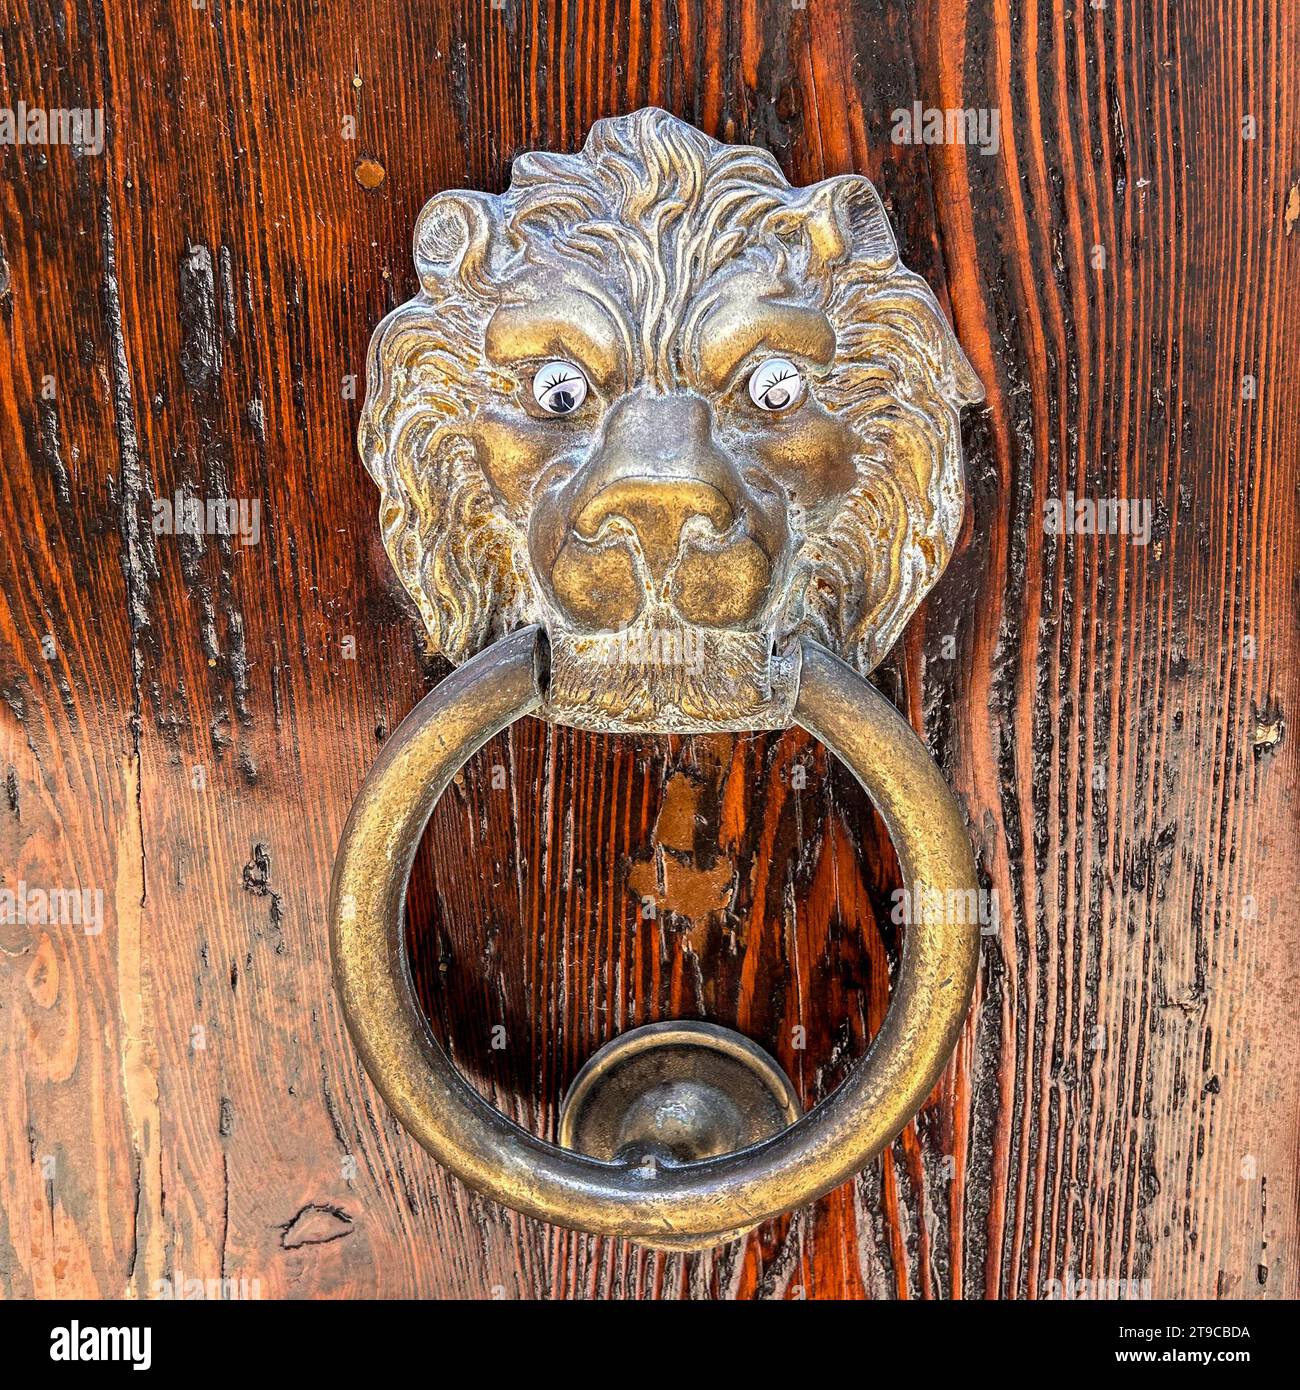 Entrée du gardien : un majestueux heurtoir de porte en forme de lion, symbole de force et de protection, invite une entrée puissante à chaque frappe autoritaire. Banque D'Images